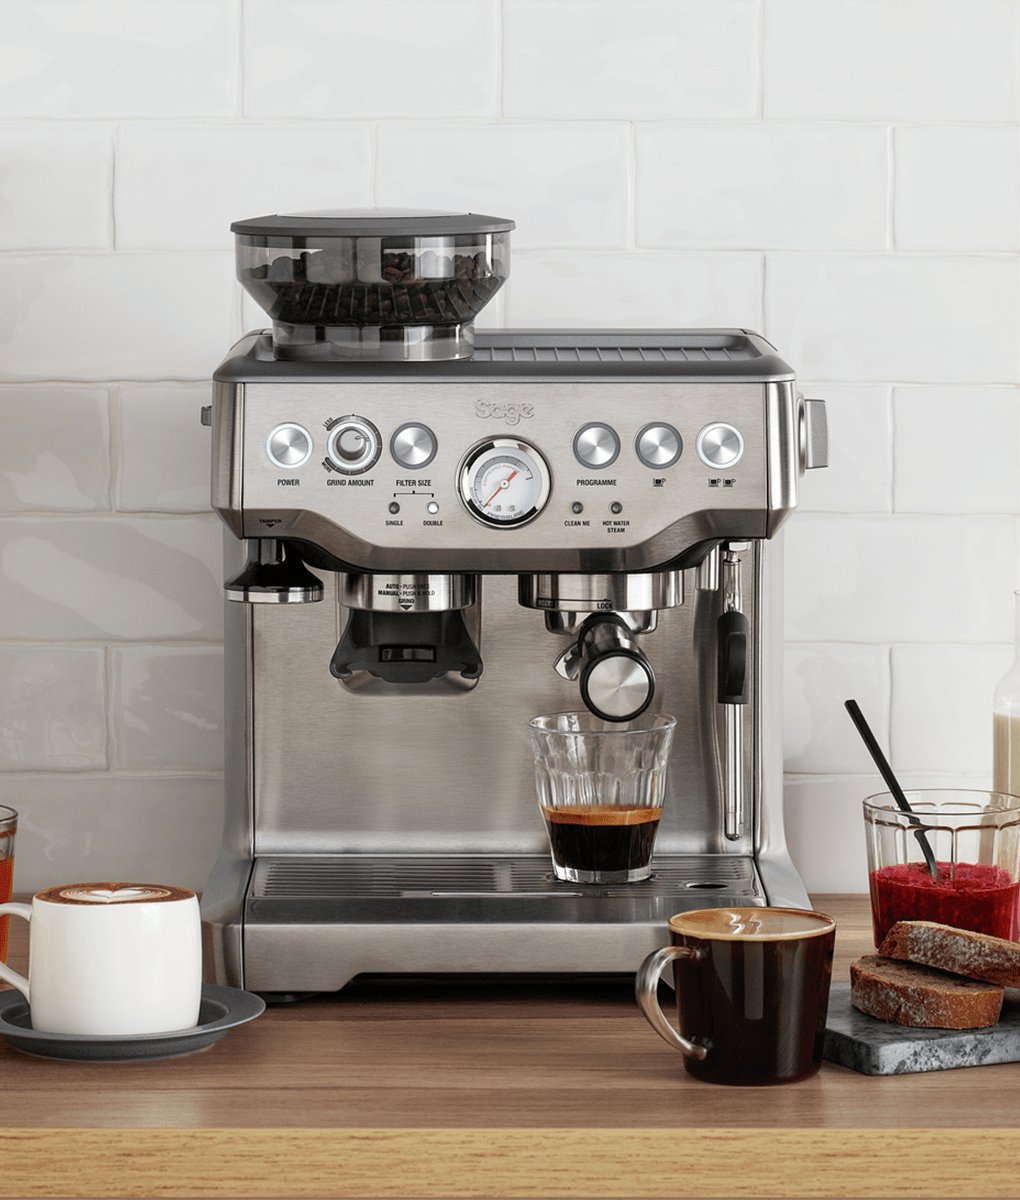 Máquina de café Barista 🏡 Sage Barista Express 